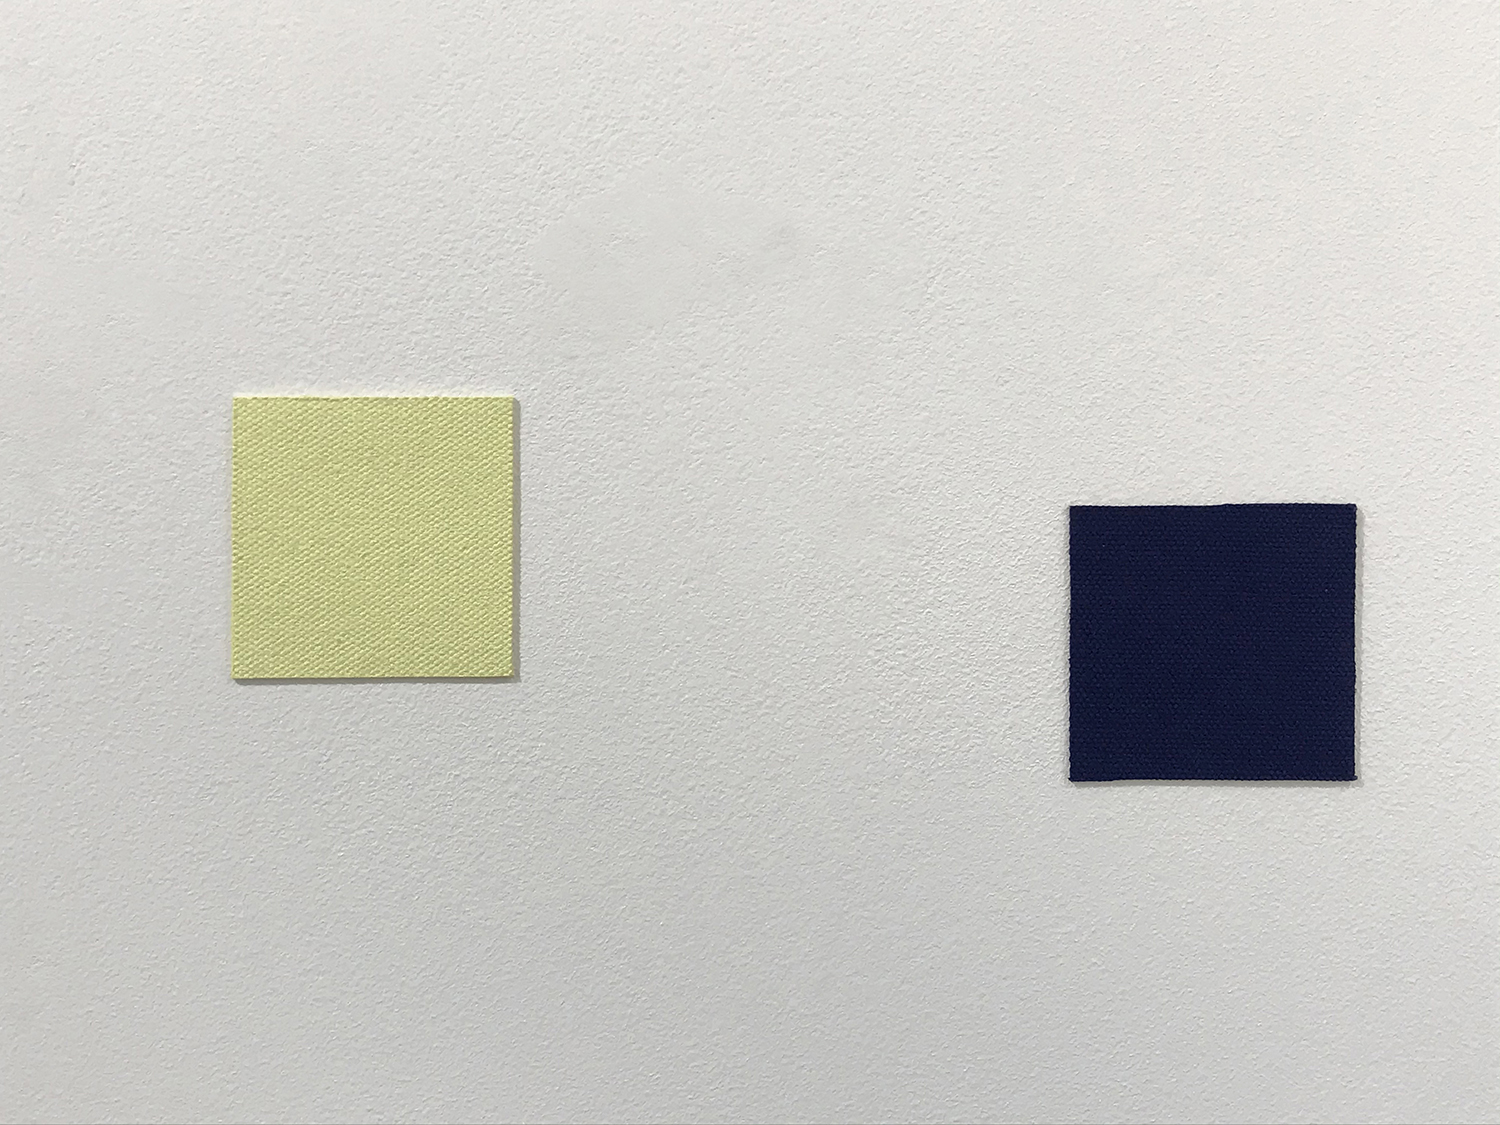 アンドレアス・カール・シュルツェ｜ANDREAS KARL SCHULZE<br>11 colored cotton square, 5 x 5 cm each, 1995 (detail)